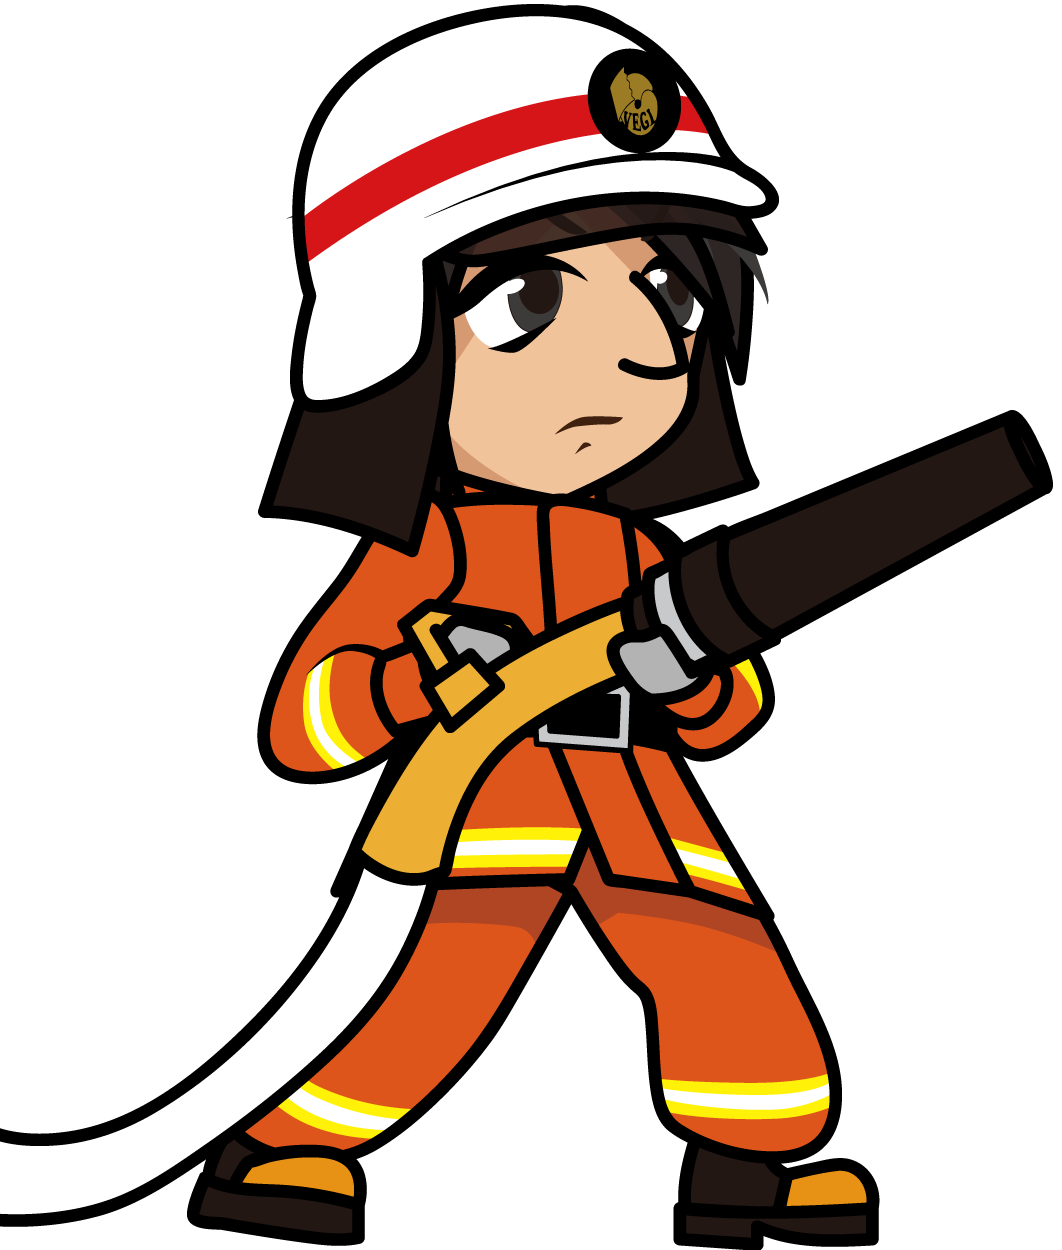 ホースを構えるオレンジ色の防火服の消防隊員のイラスト素材 准さん Veglキャラクターイラスト素材